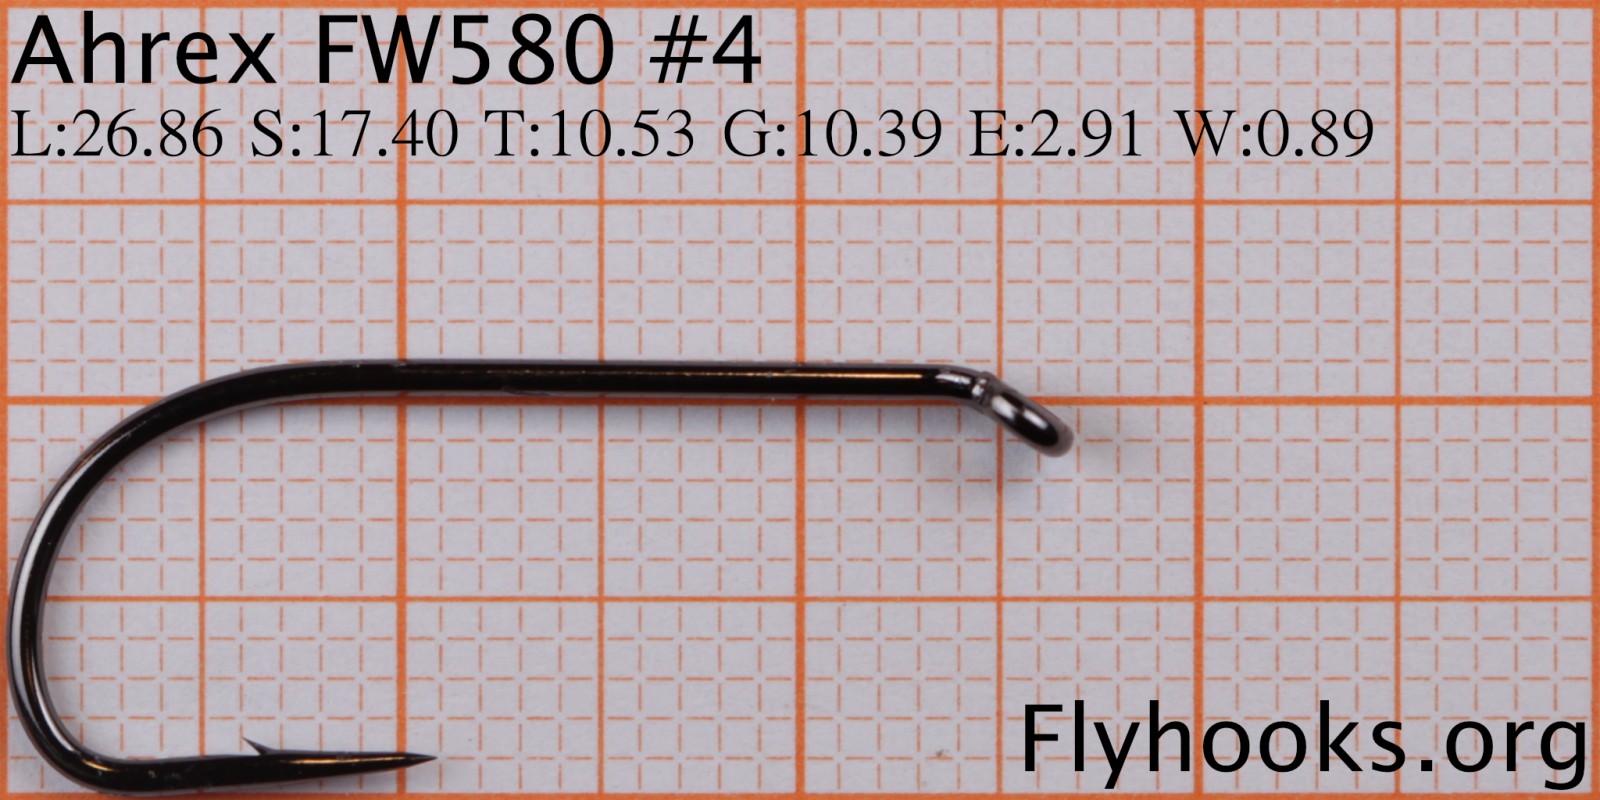 FW 580 - Wet Fly